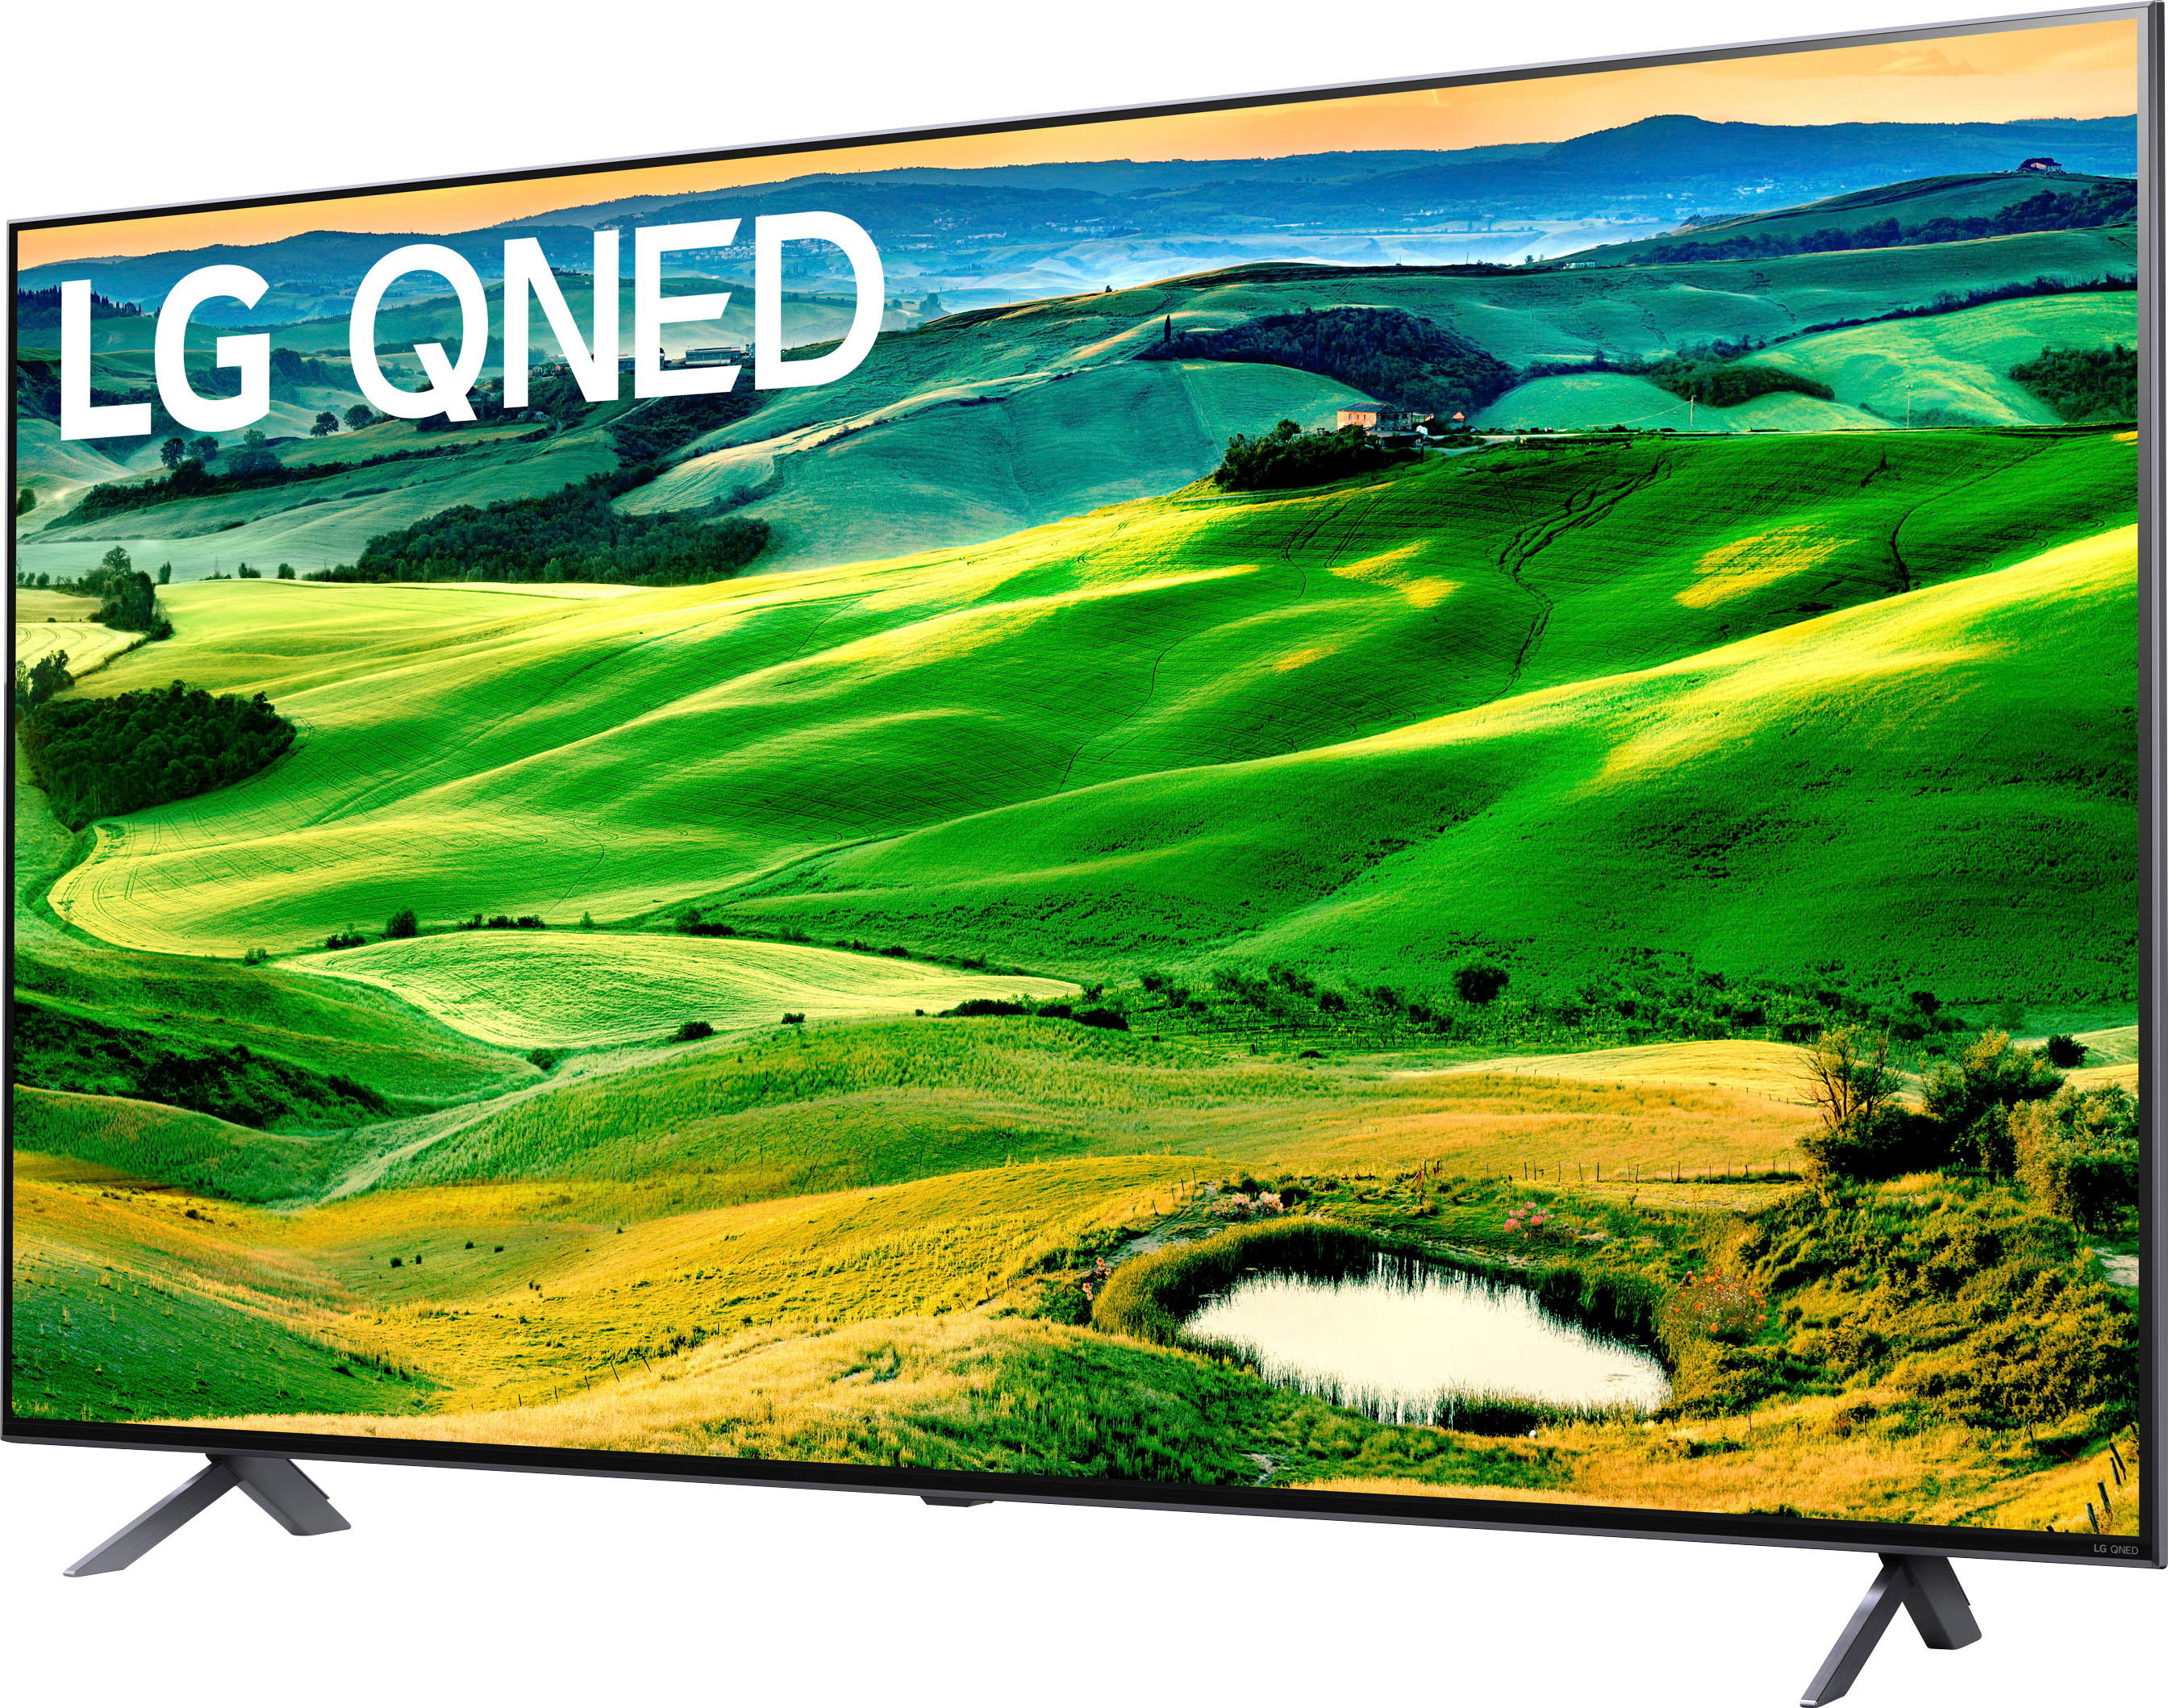 Best LG TV In India: 50 Inch Smart TV Vs 55 Inch TV Vs 65 Inch LED TV